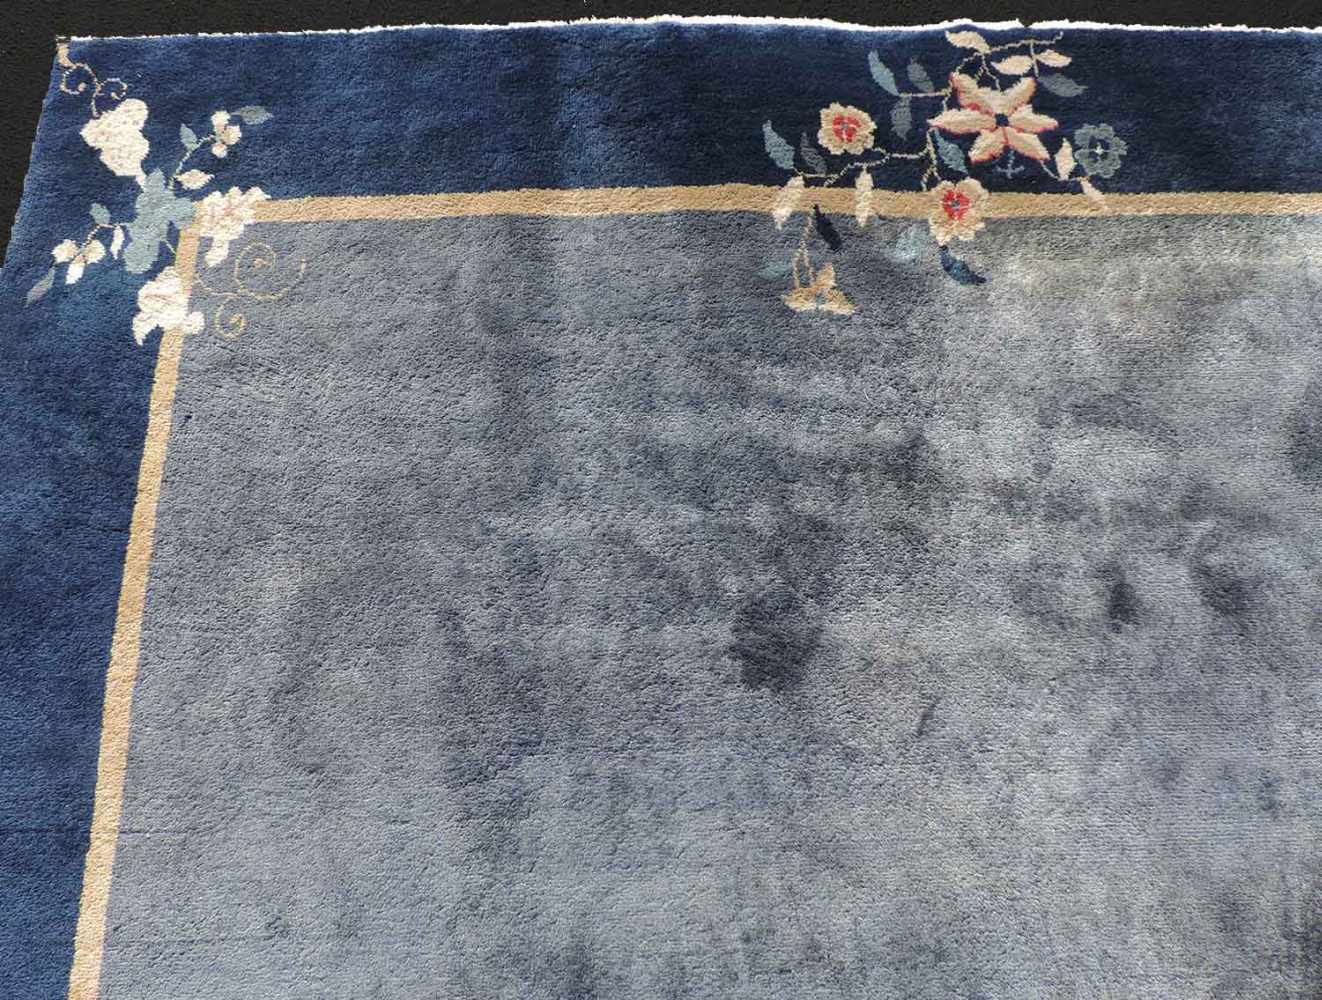 Peking Teppich. China. Antik. Um 1920 361 cm x 267 cm. Handgeknüpft. Mancesterwolle auf Baumwolle. - Image 6 of 8